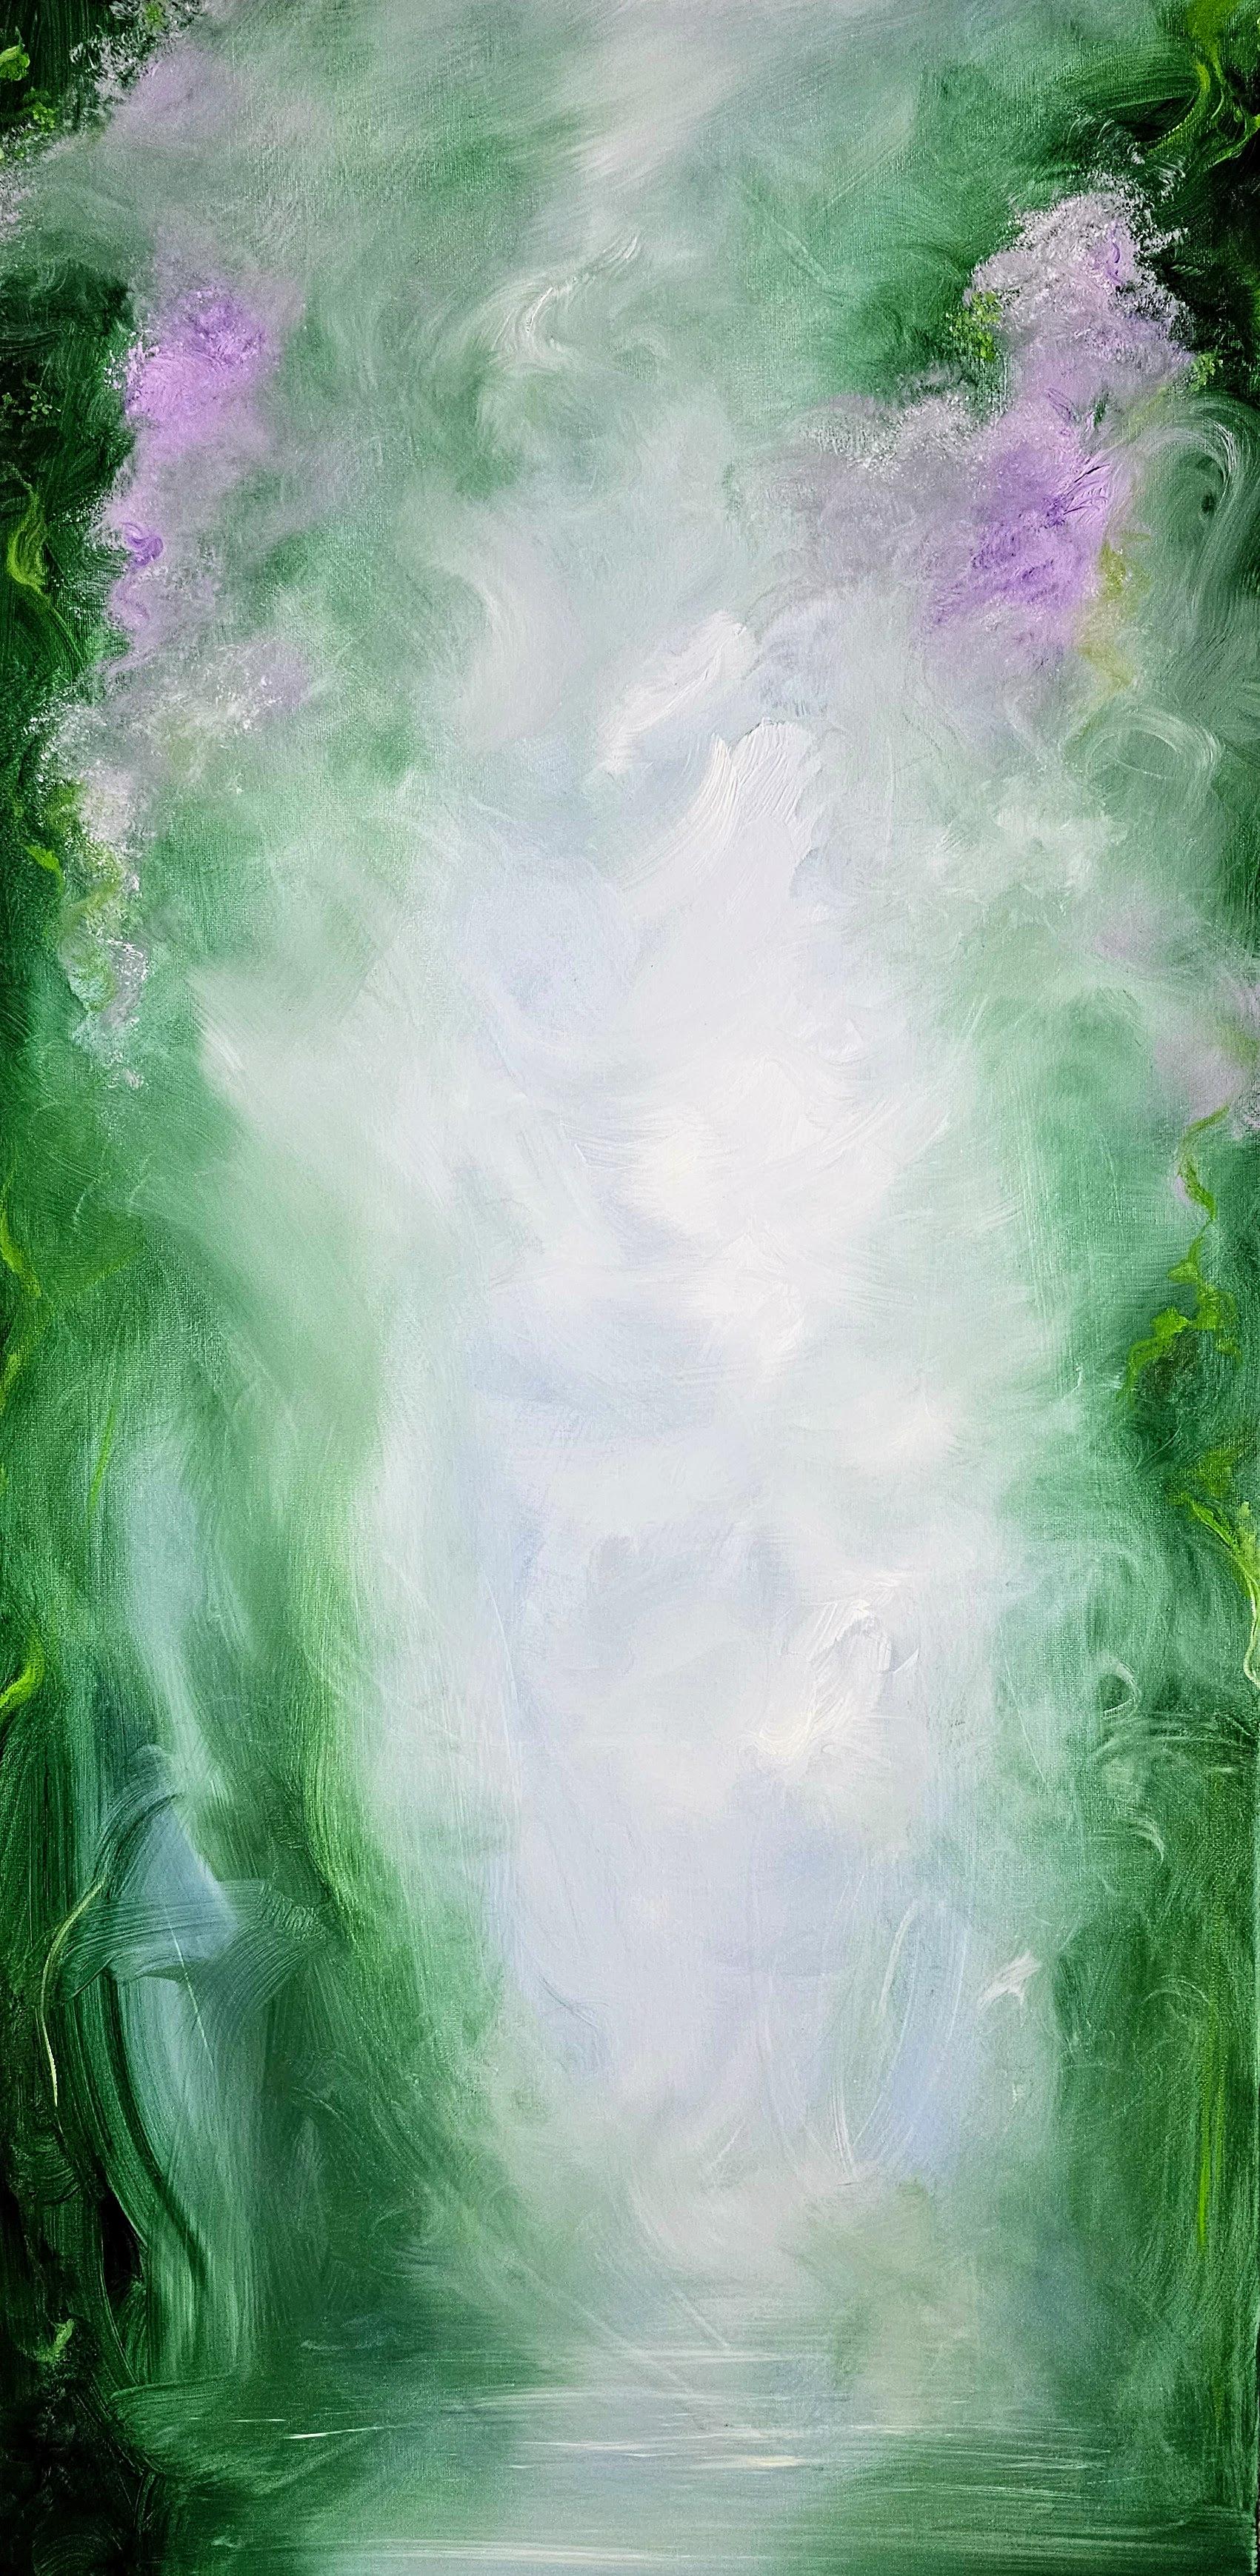 Abstract Painting Jennifer L. Baker - solstice d'été - peinture de nature abstraite verte vibrante